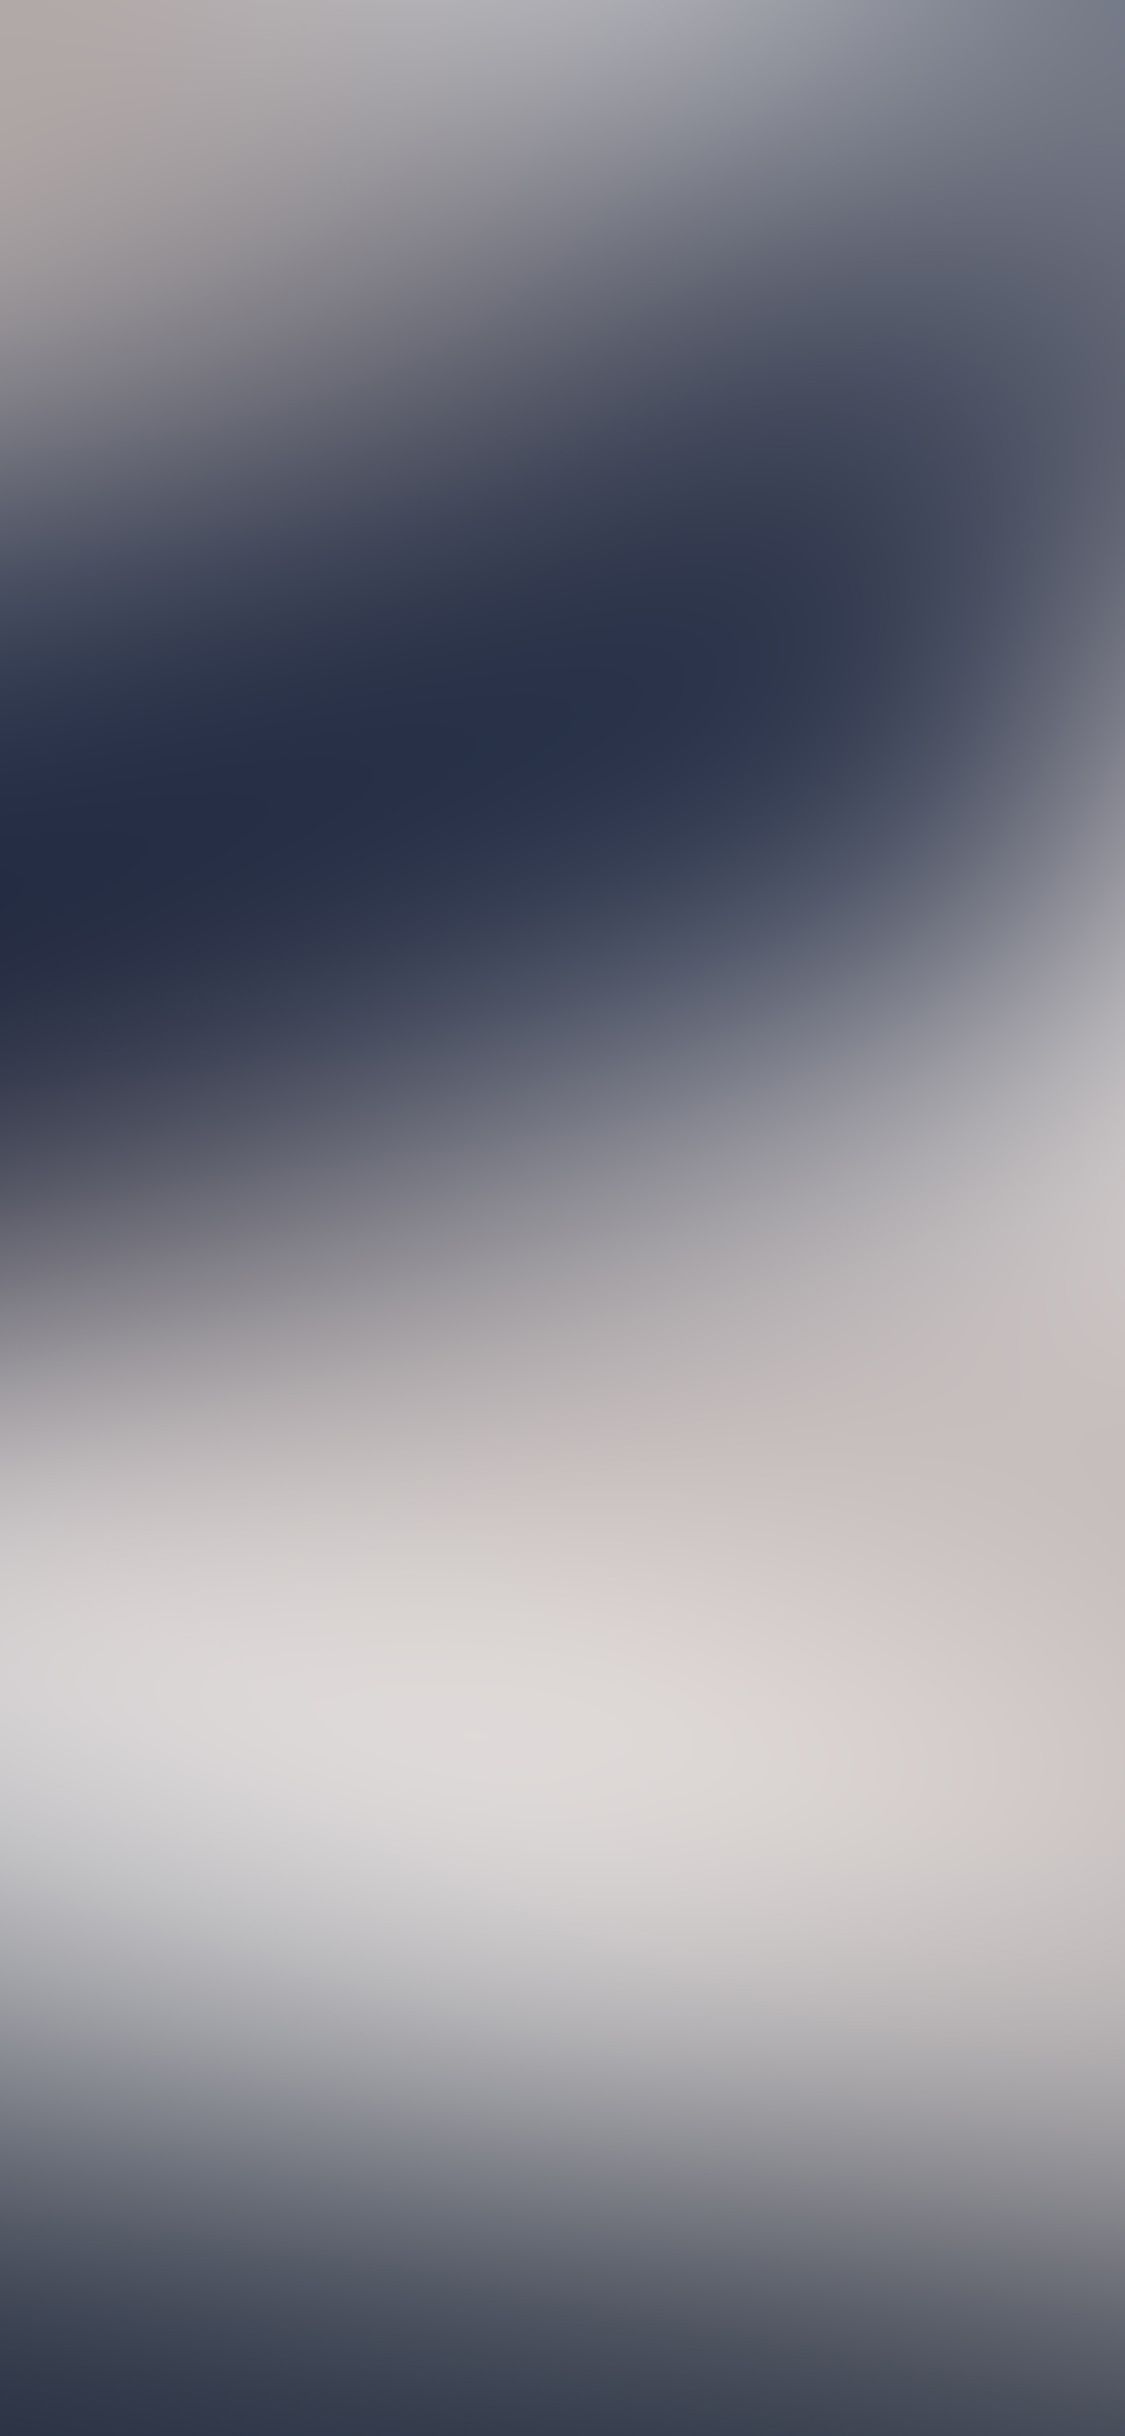 iPhone X wallpaper. blue gray gradation blur